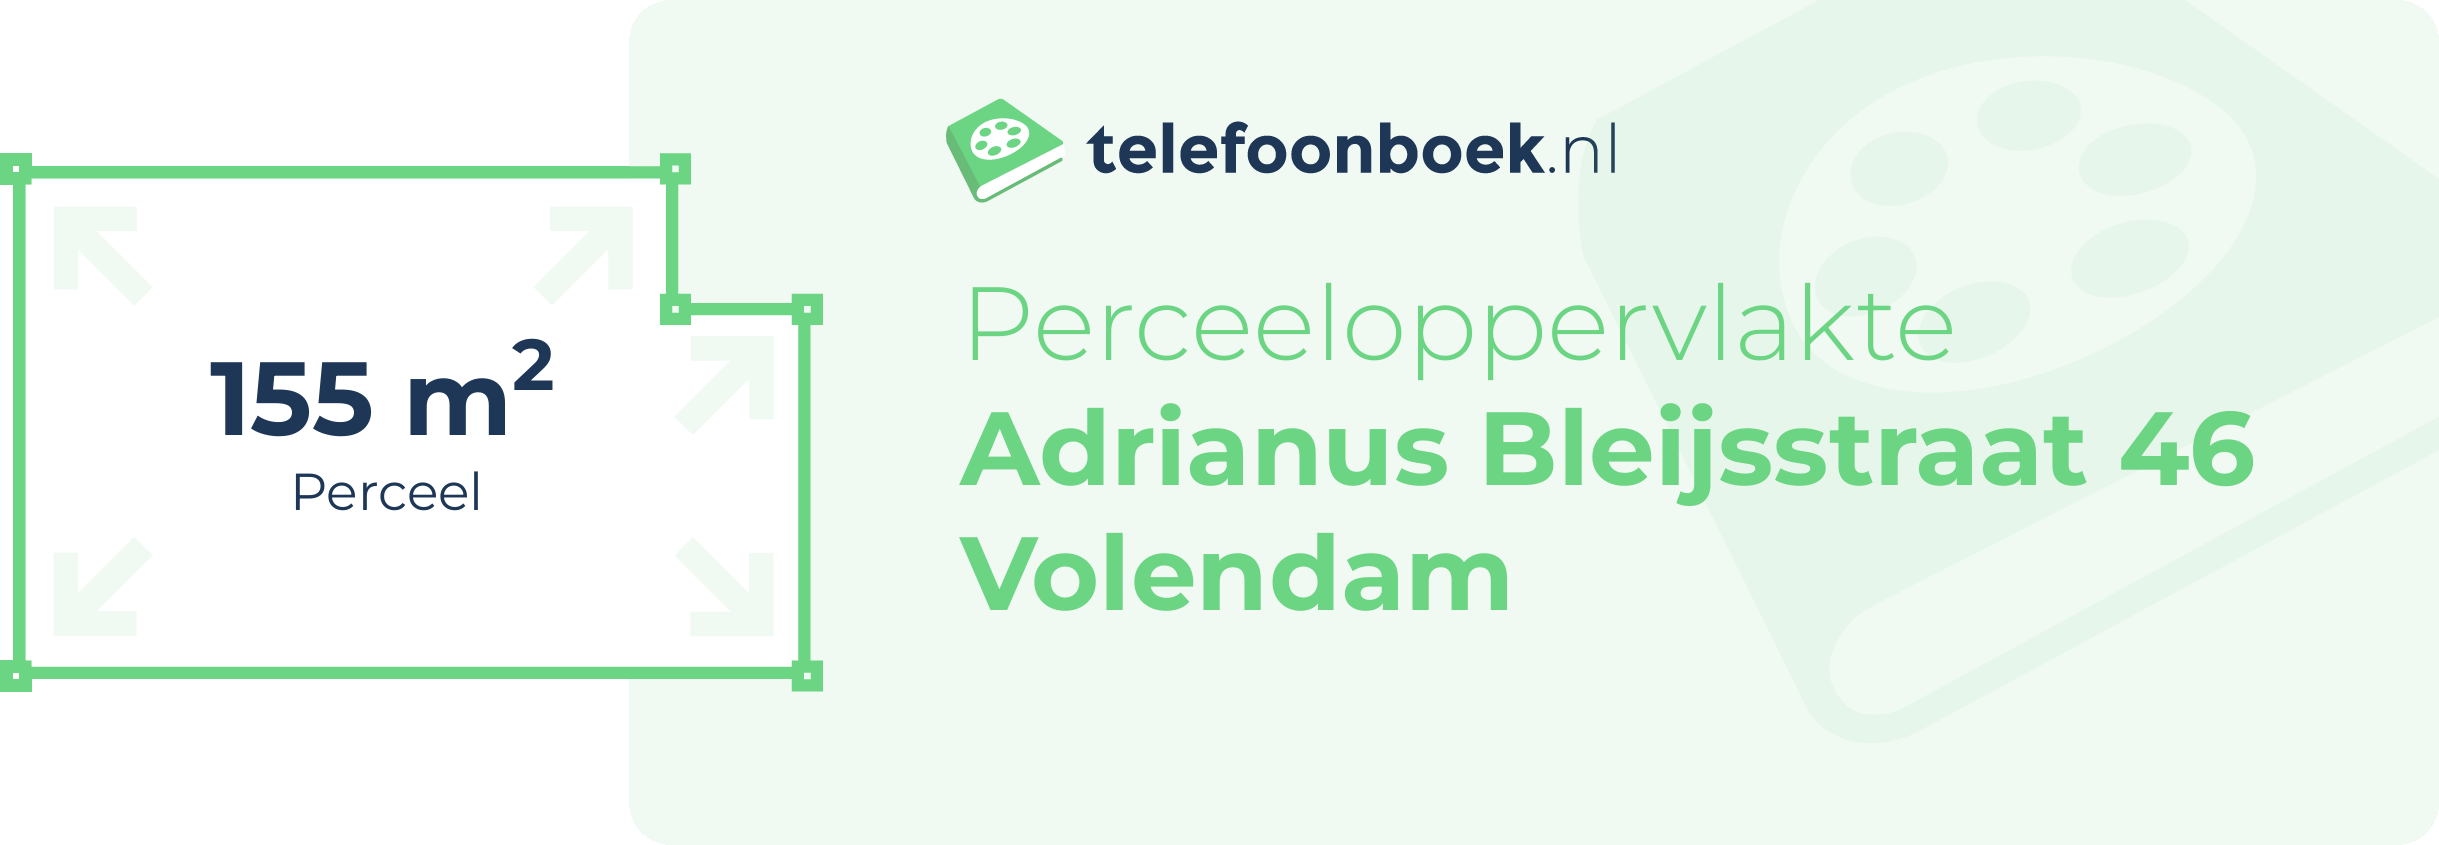 Perceeloppervlakte Adrianus Bleijsstraat 46 Volendam